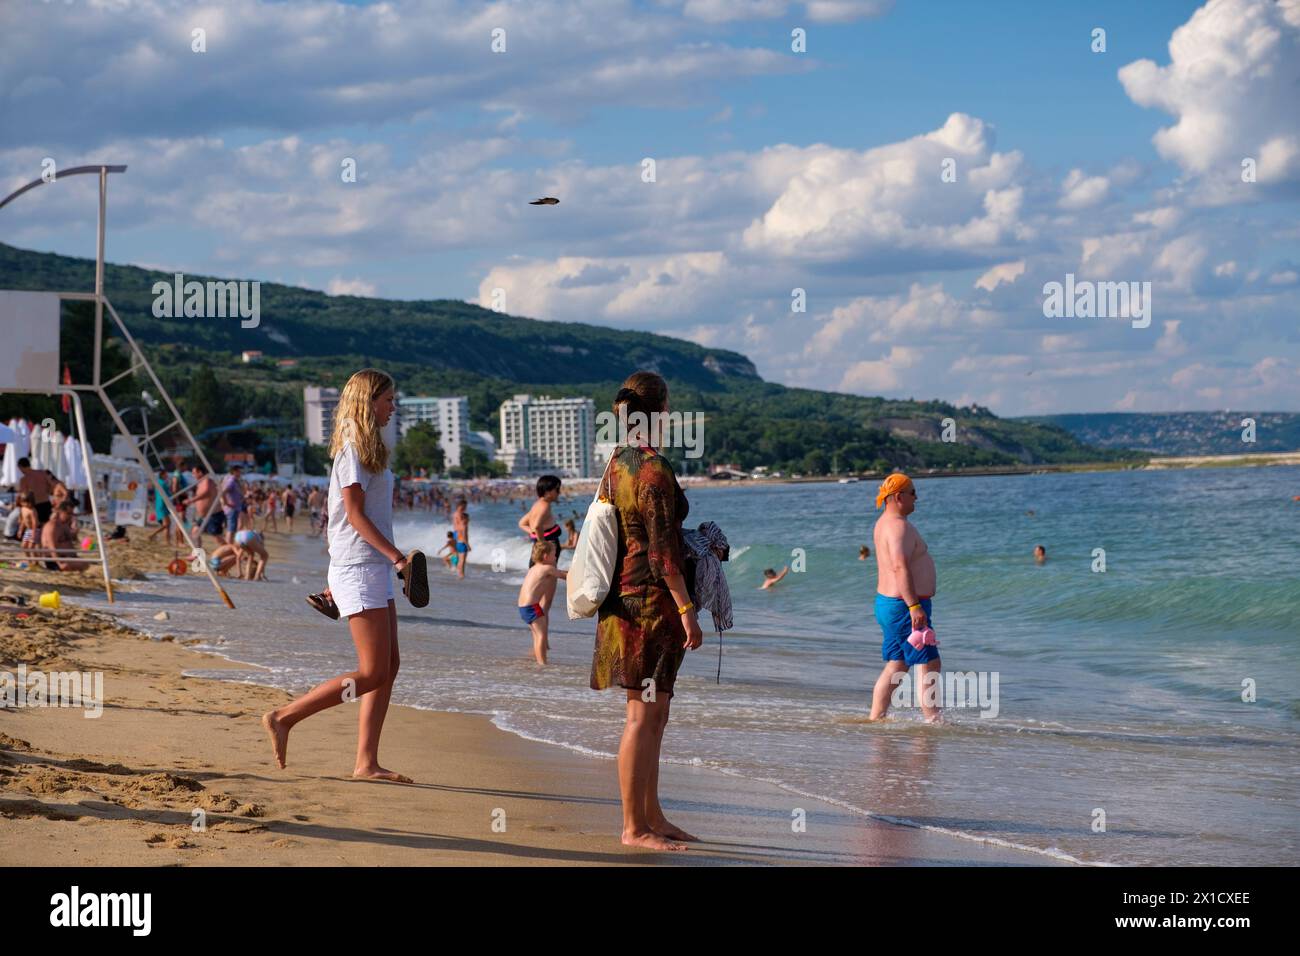 Eine Gruppe von Touristen genießt den Strand und das Meer. Sie verbringen ihren Urlaub an einem wunderschönen Sandstrand in Varna, Bulgarien. Hier ist Golden Sands Beach. Stockfoto